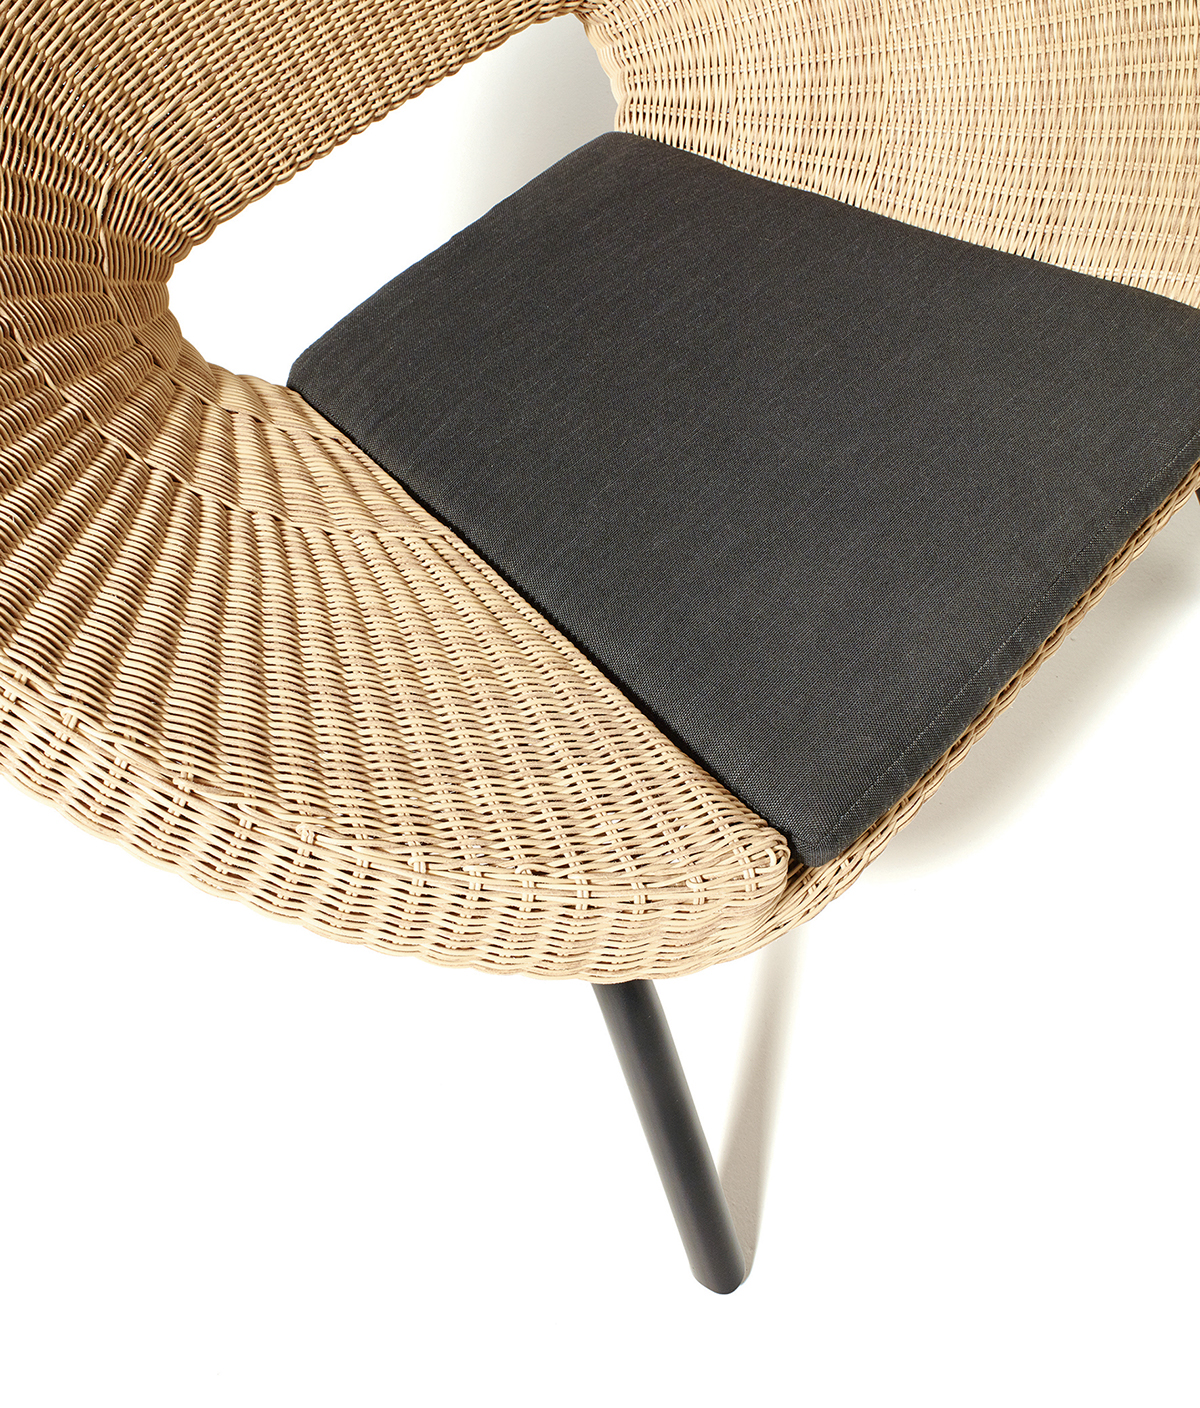 让你在家瘫的有情调的竹编沙发设计